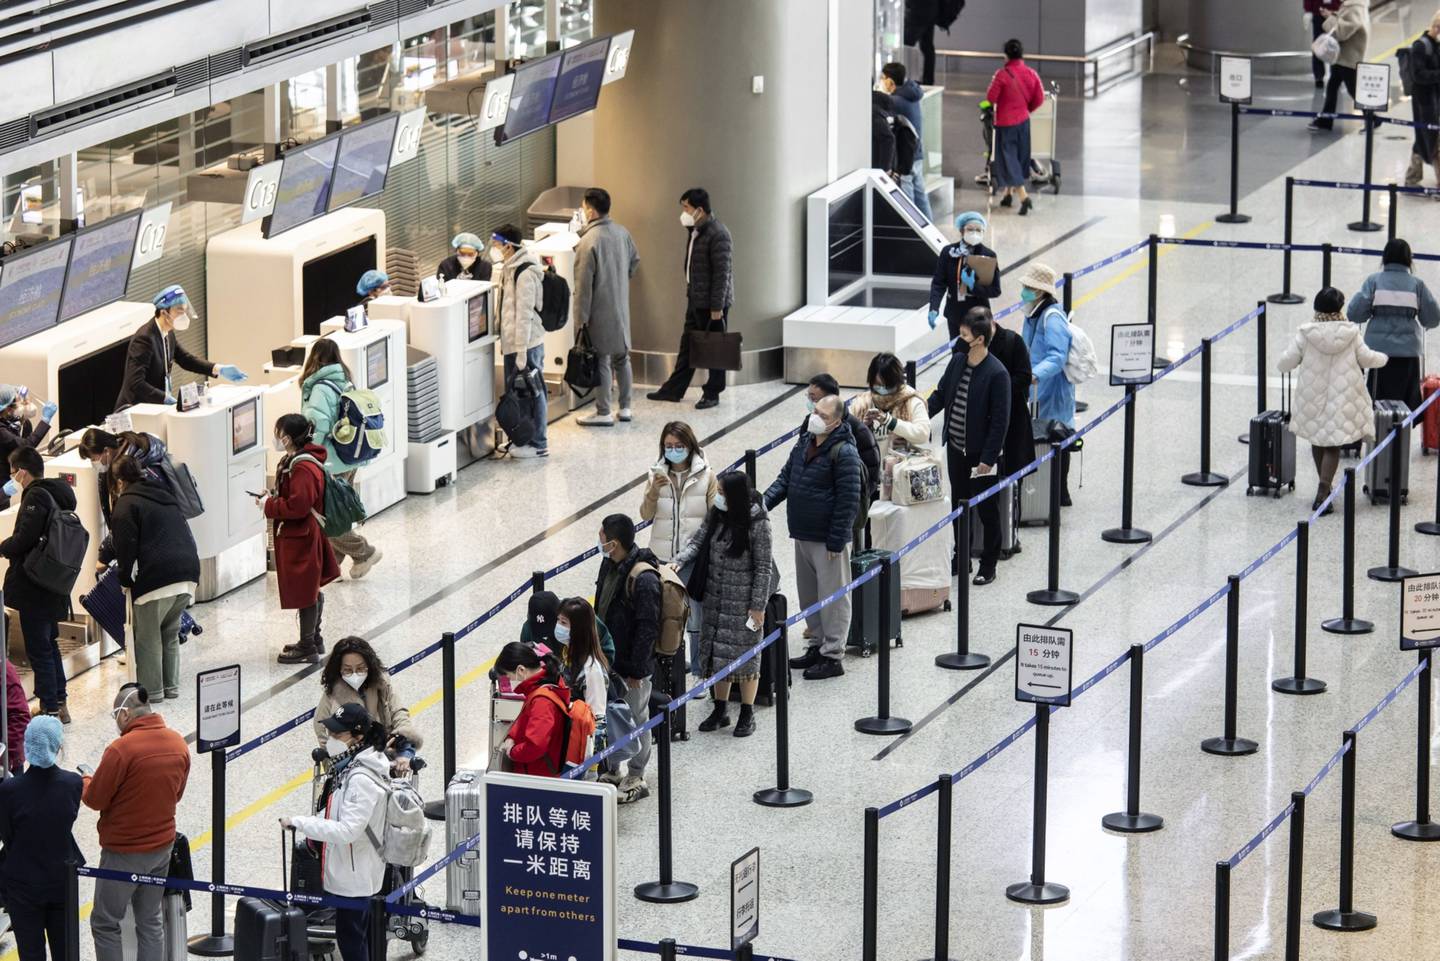 Los países consideran exigir de los viajeros chinos mascarillas y requisitos de pruebas previas al viaje en los vuelos procedentes de China